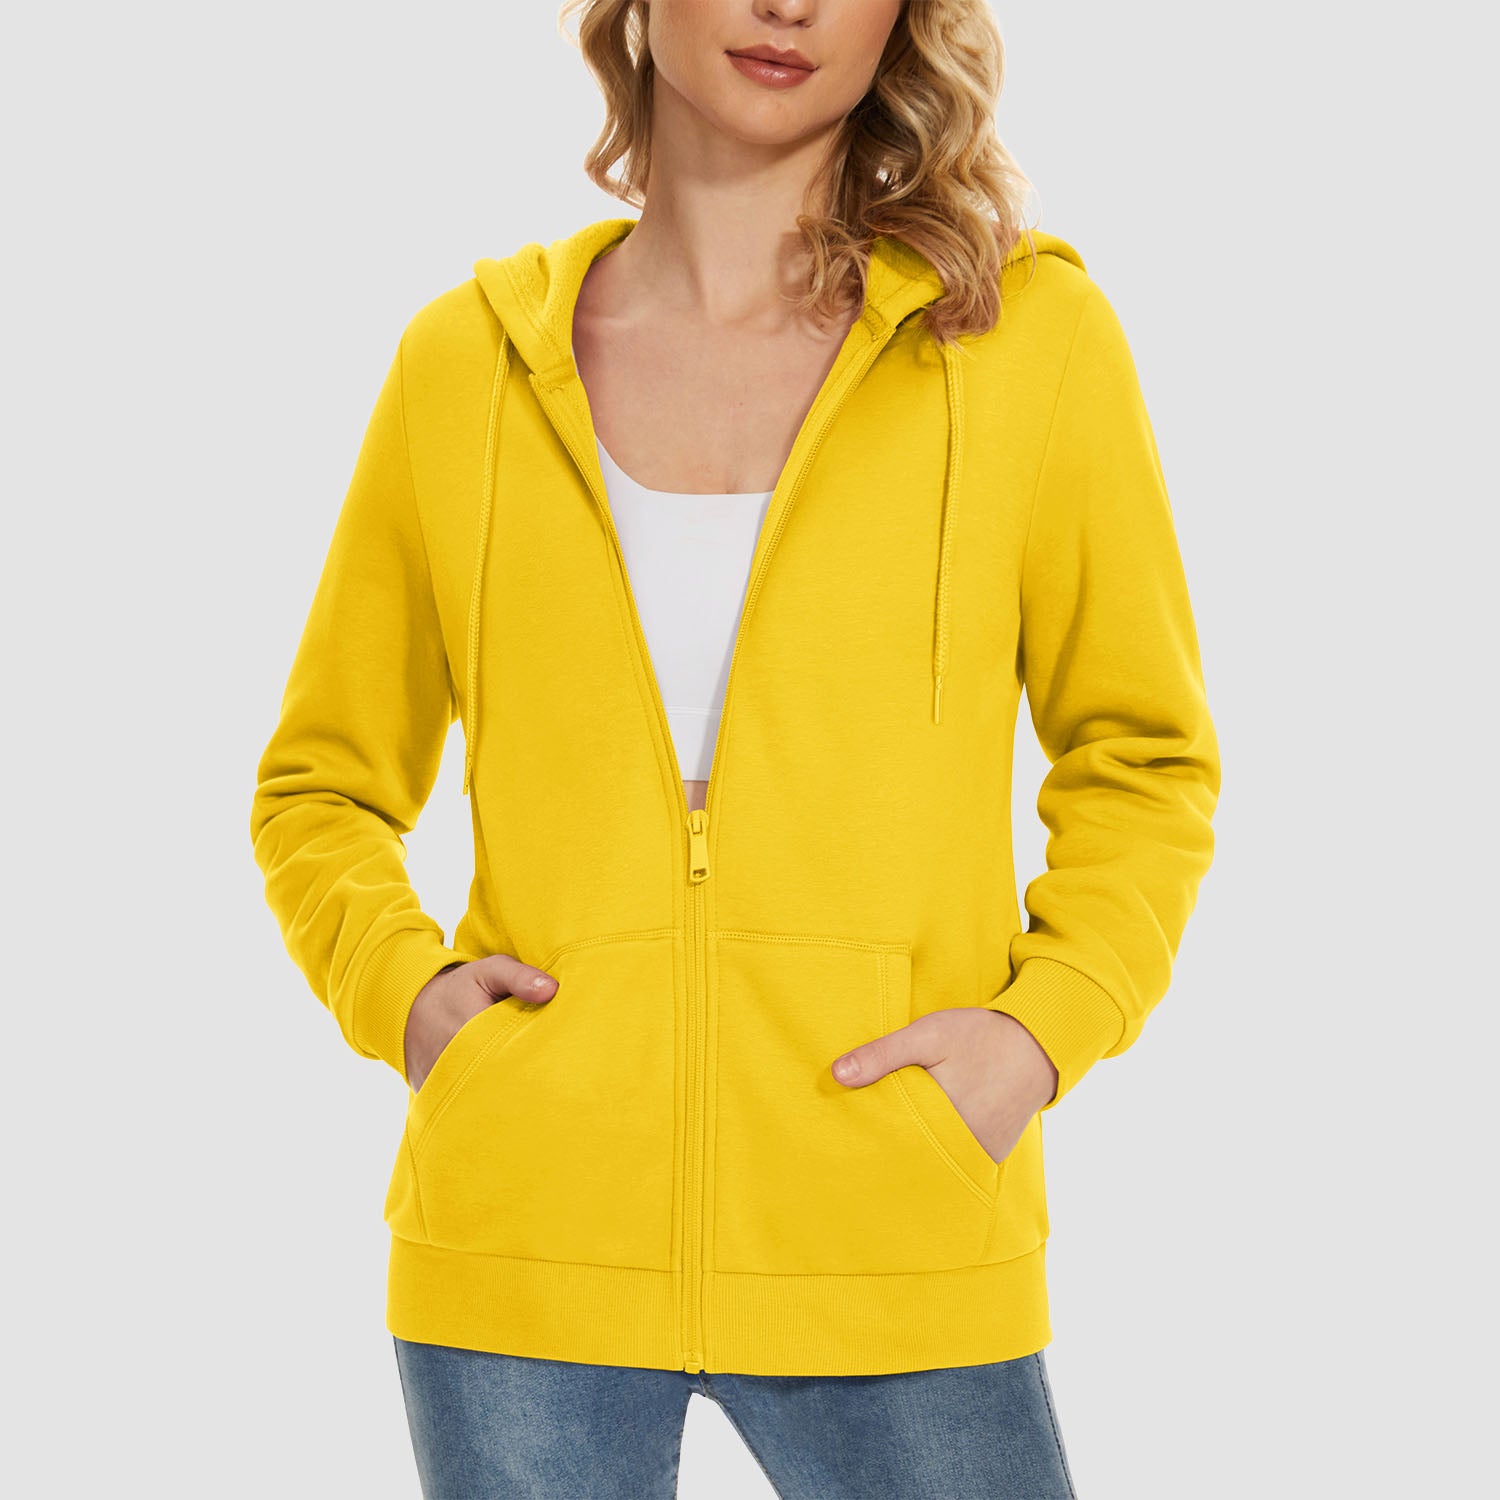 Women's Jacket Fleece Lining Hoodie Jacket Full Zip Up Casual Coat with Pockets